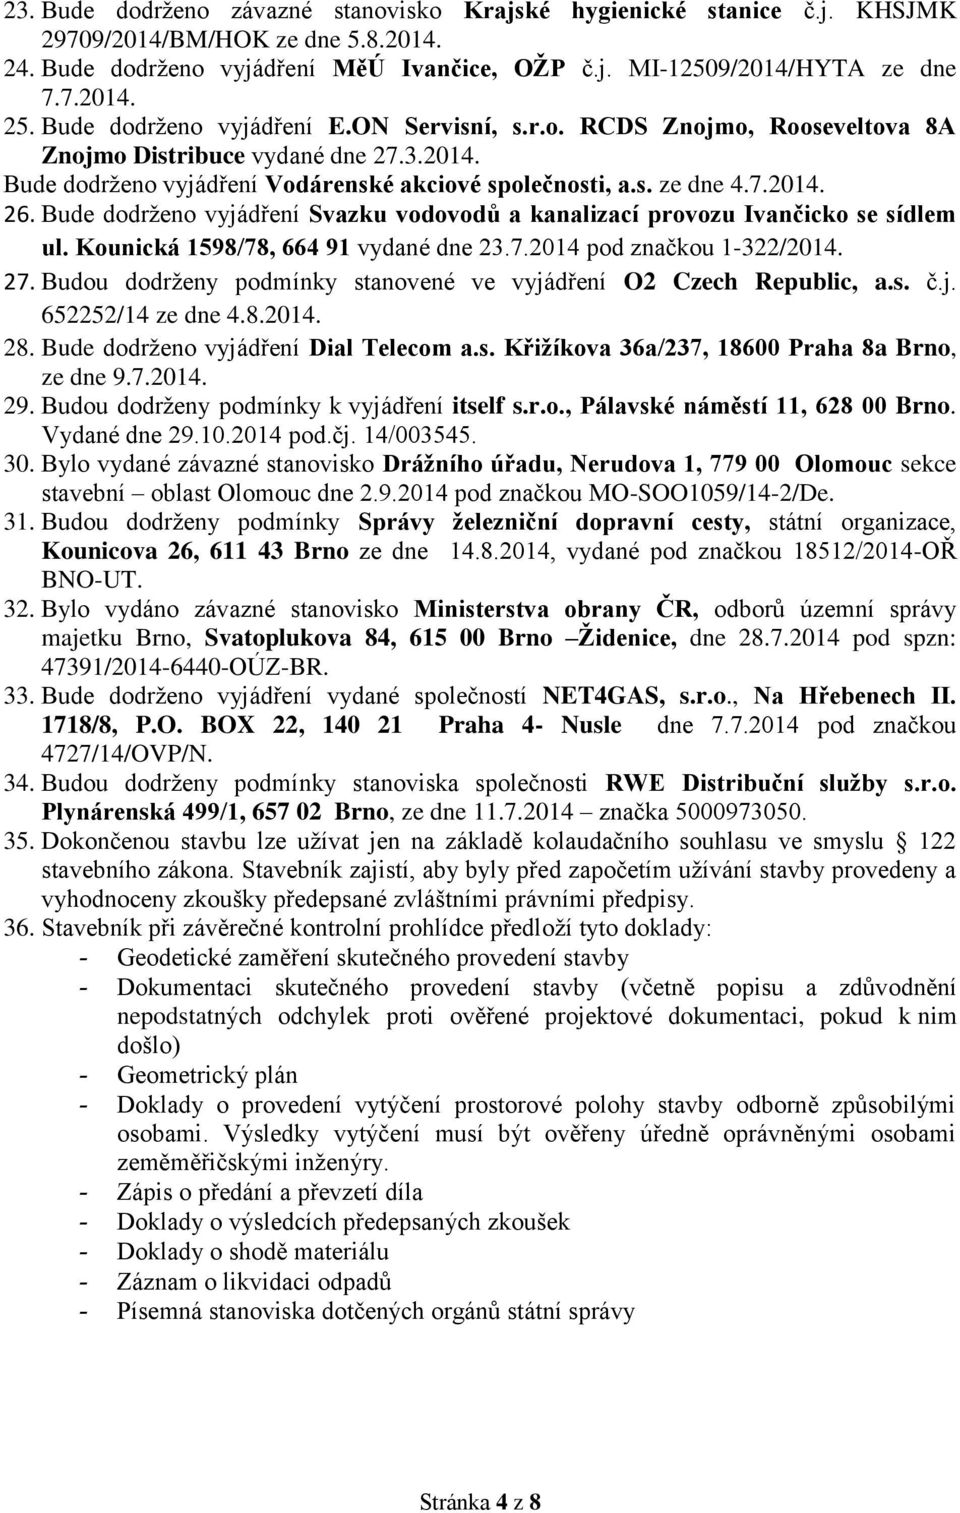 Bude dodrženo vyjádření Svazku vodovodů a kanalizací provozu Ivančicko se sídlem ul. Kounická 1598/78, 664 91 vydané dne 23.7.2014 pod značkou 1-322/2014. 27.